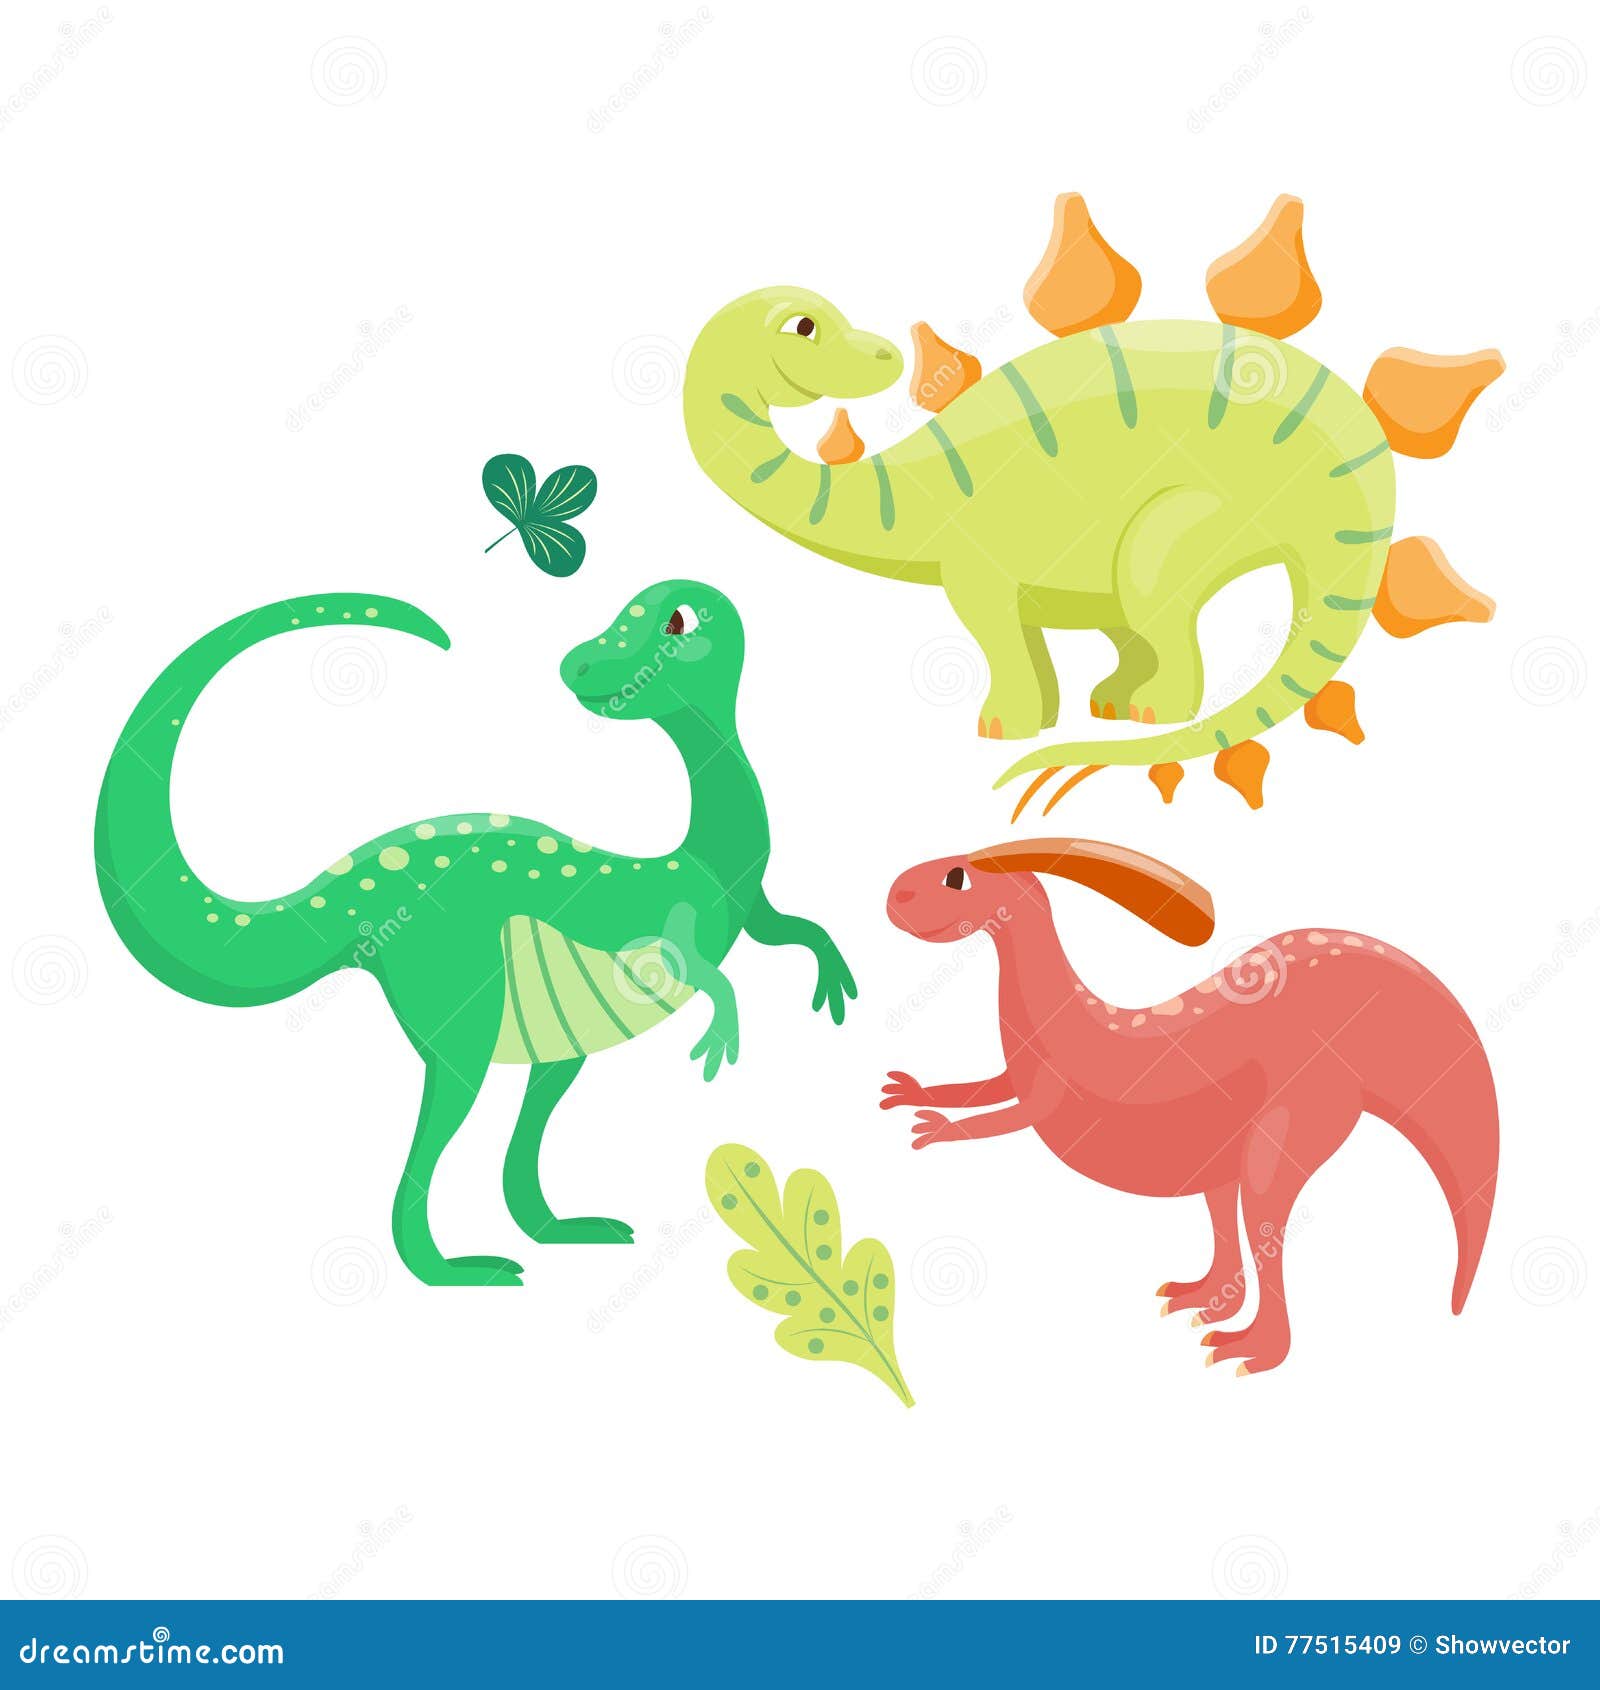 Cartoon Dinosaur Vector Illustration. Stock Vector - Illustration of ...